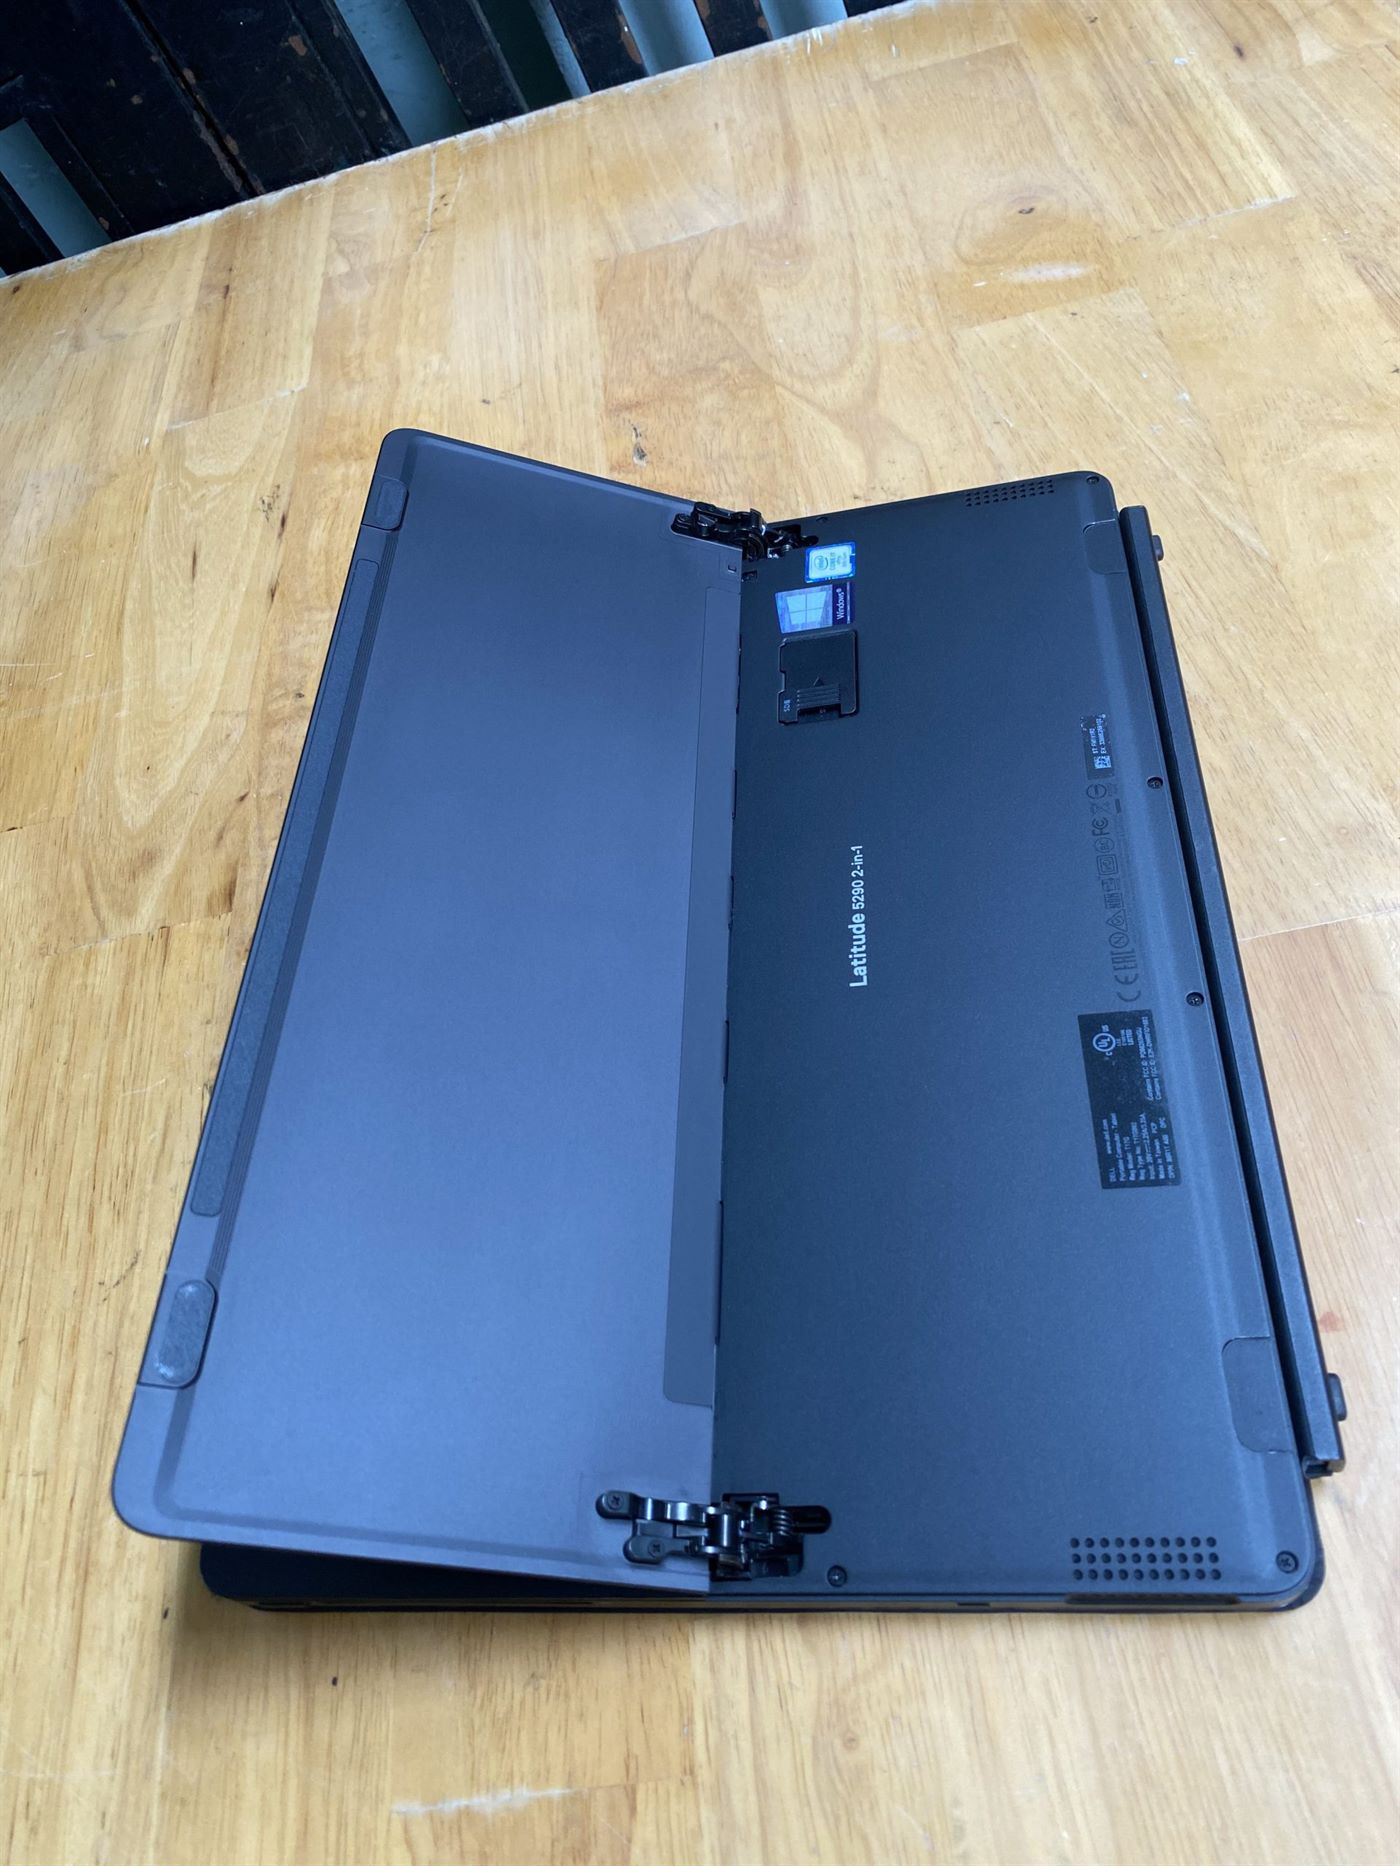 Laptop Dell Latitude 5290 Core i7 - 8650u, 16G, SSD 256G, Full HD, Touch,  Finger,  - Laptop Hoàng Long - Uy tín - Chất lượng - Giá Rẻ HCM -  Call 084 99999 33